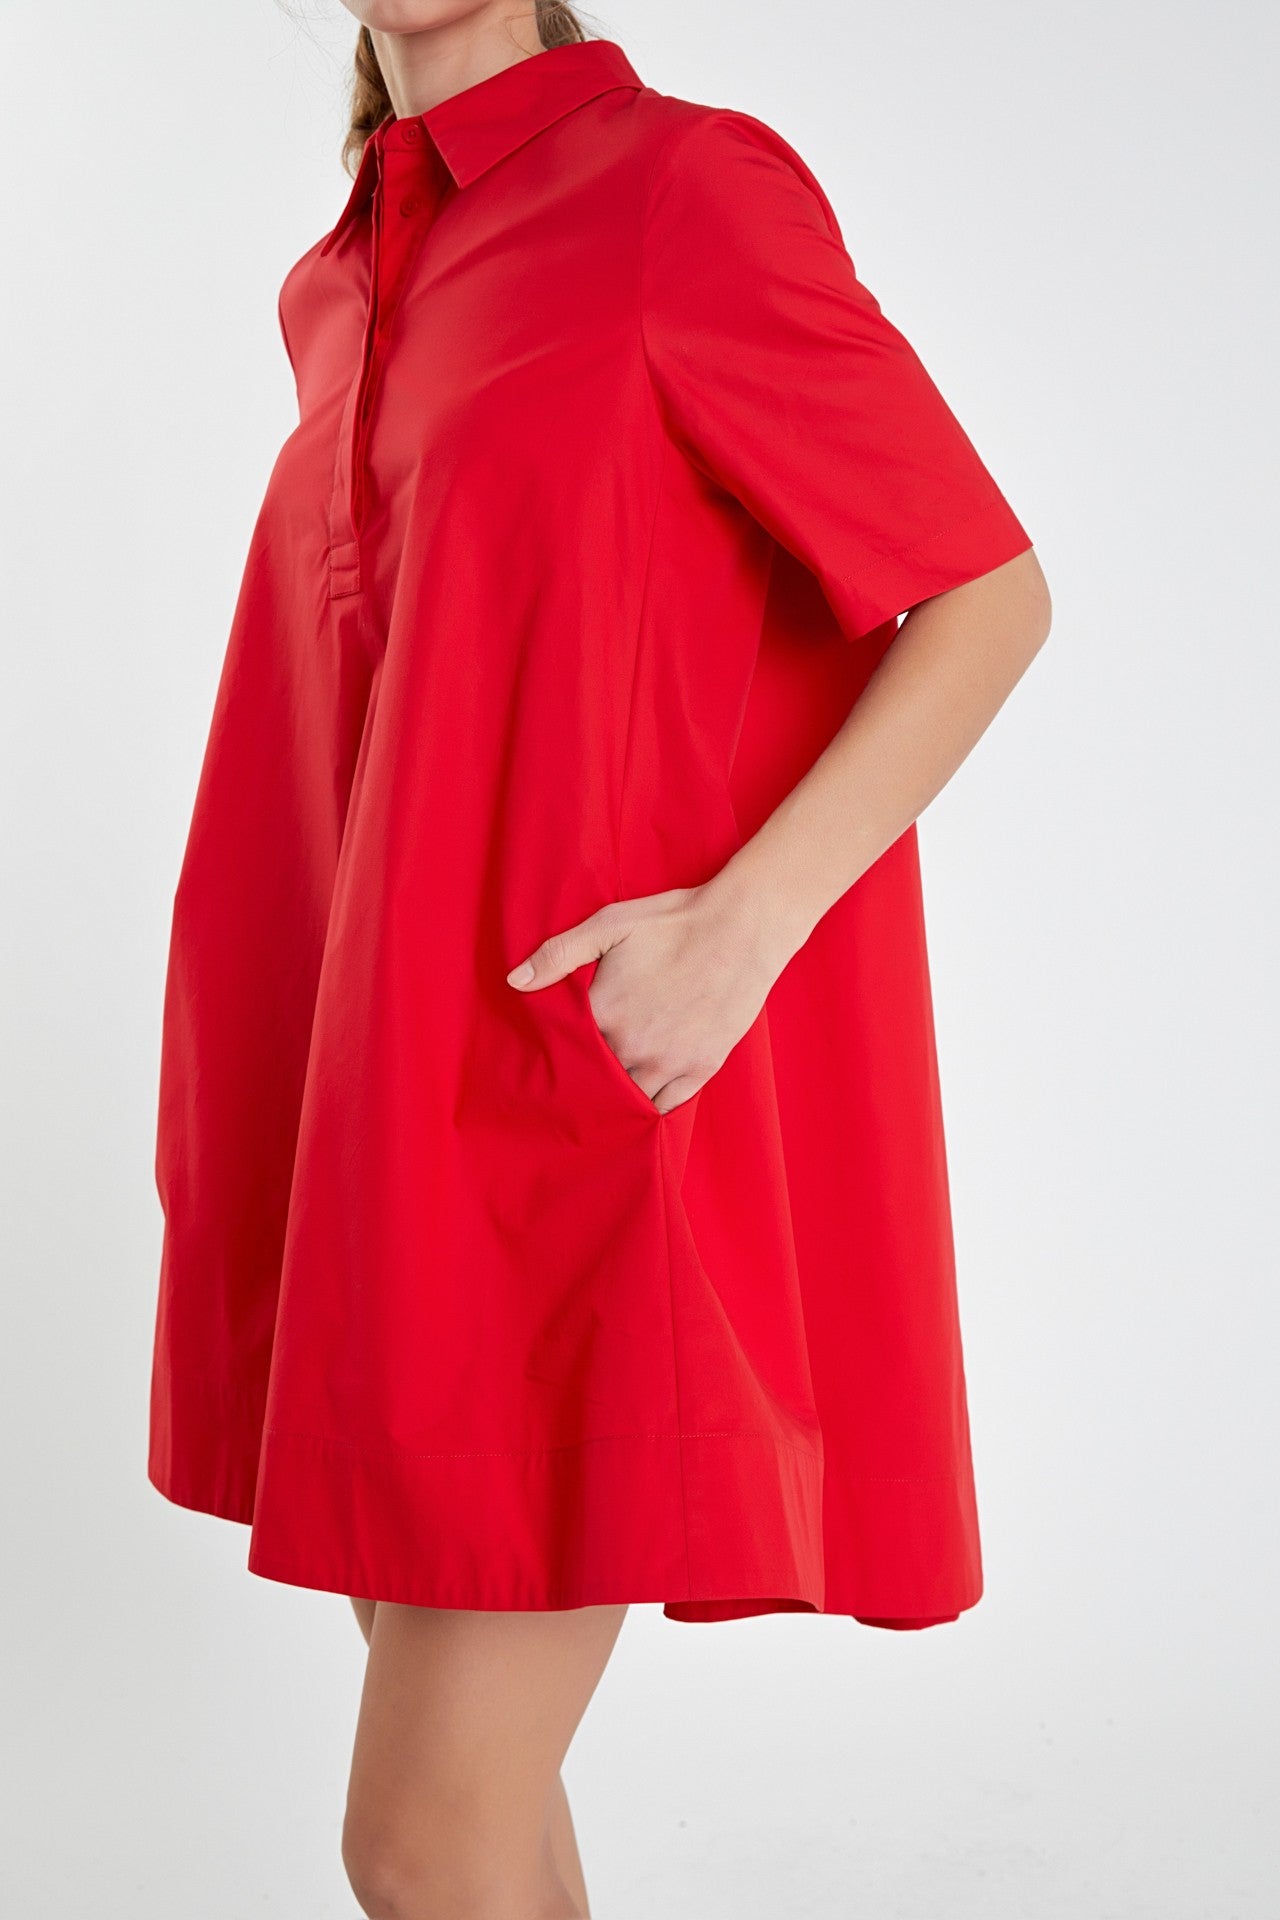 MILLER A-LINE SHORT SLEEVE SHIRT DRESS IN RED